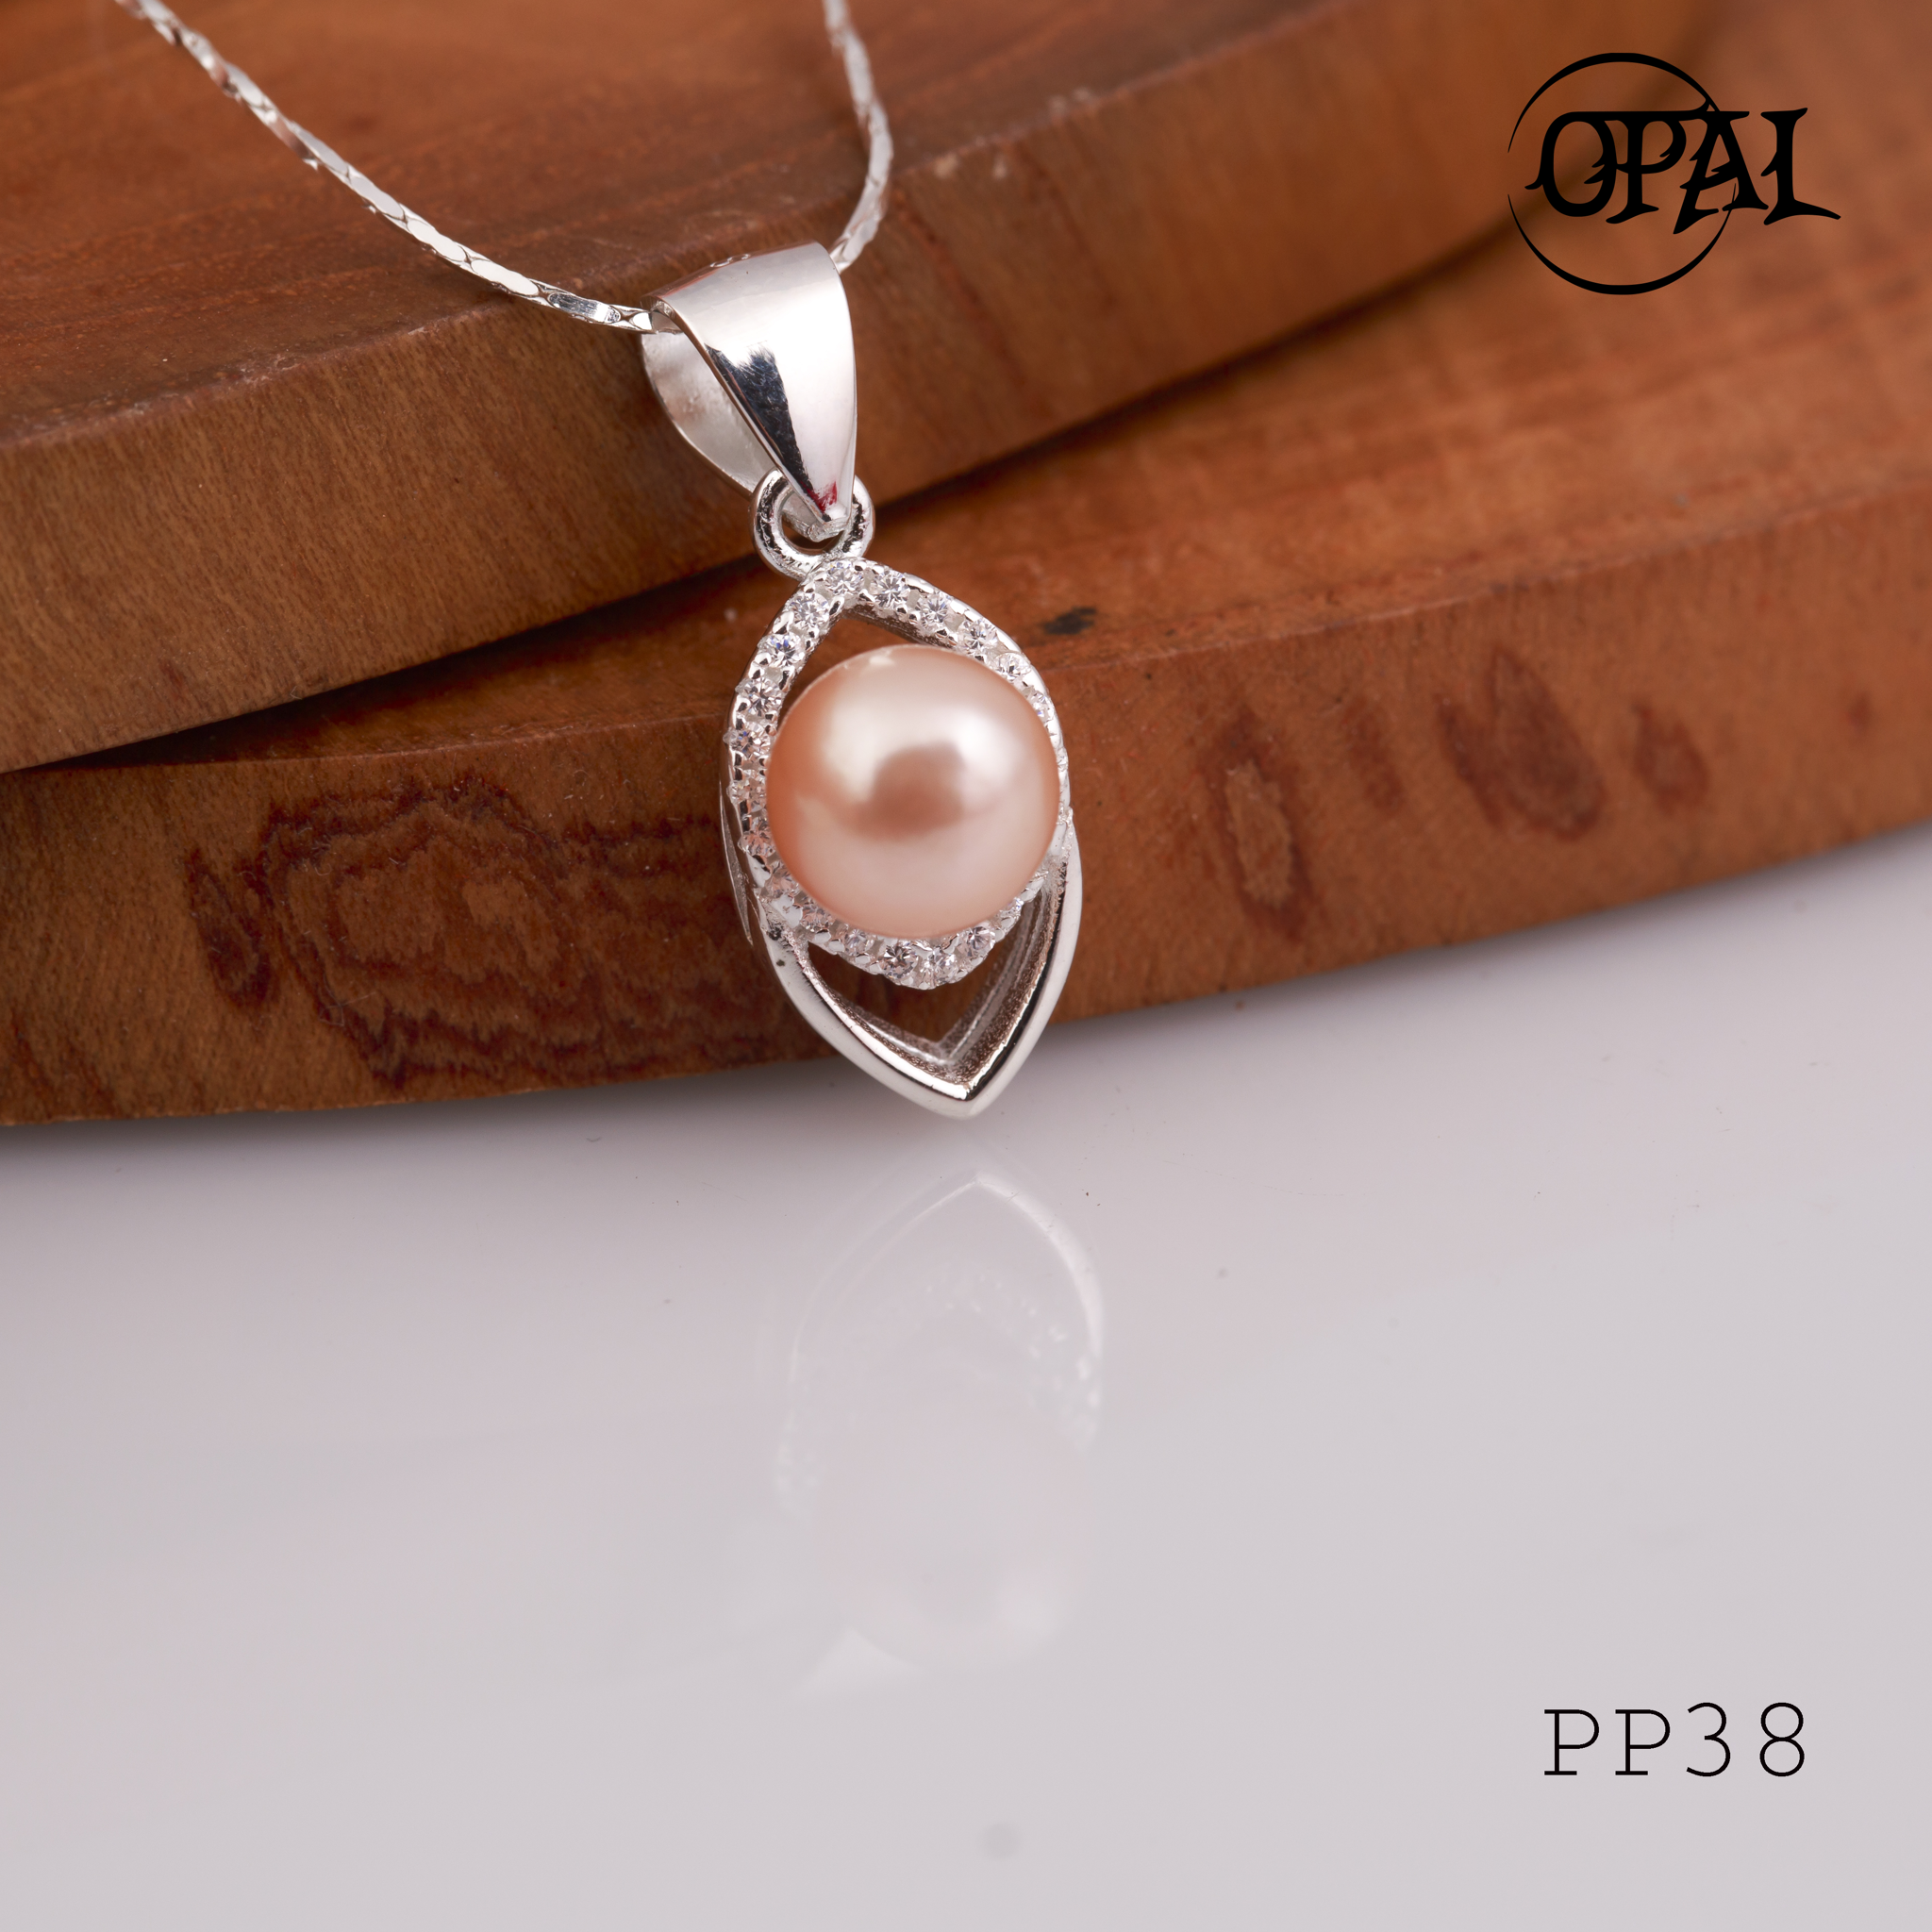  PP38- Dây chuyền bạc kèm mặt Ngọc Trai OPAL 